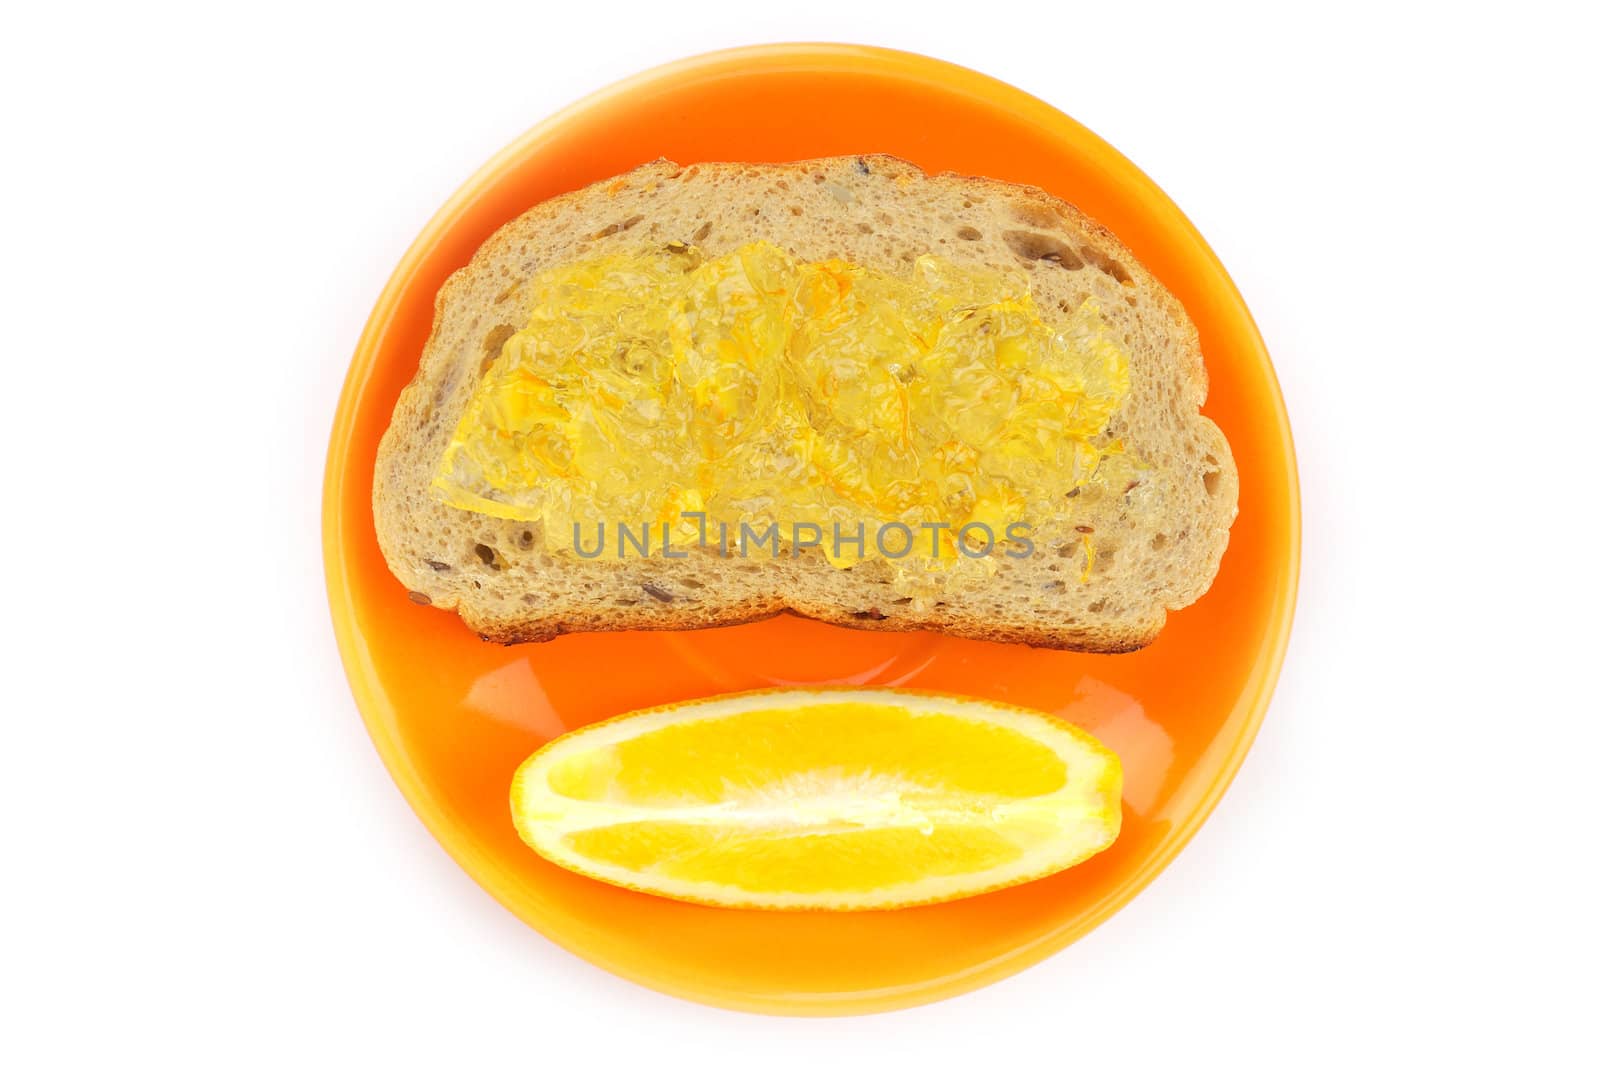 Orange jam and Wholegrain bread